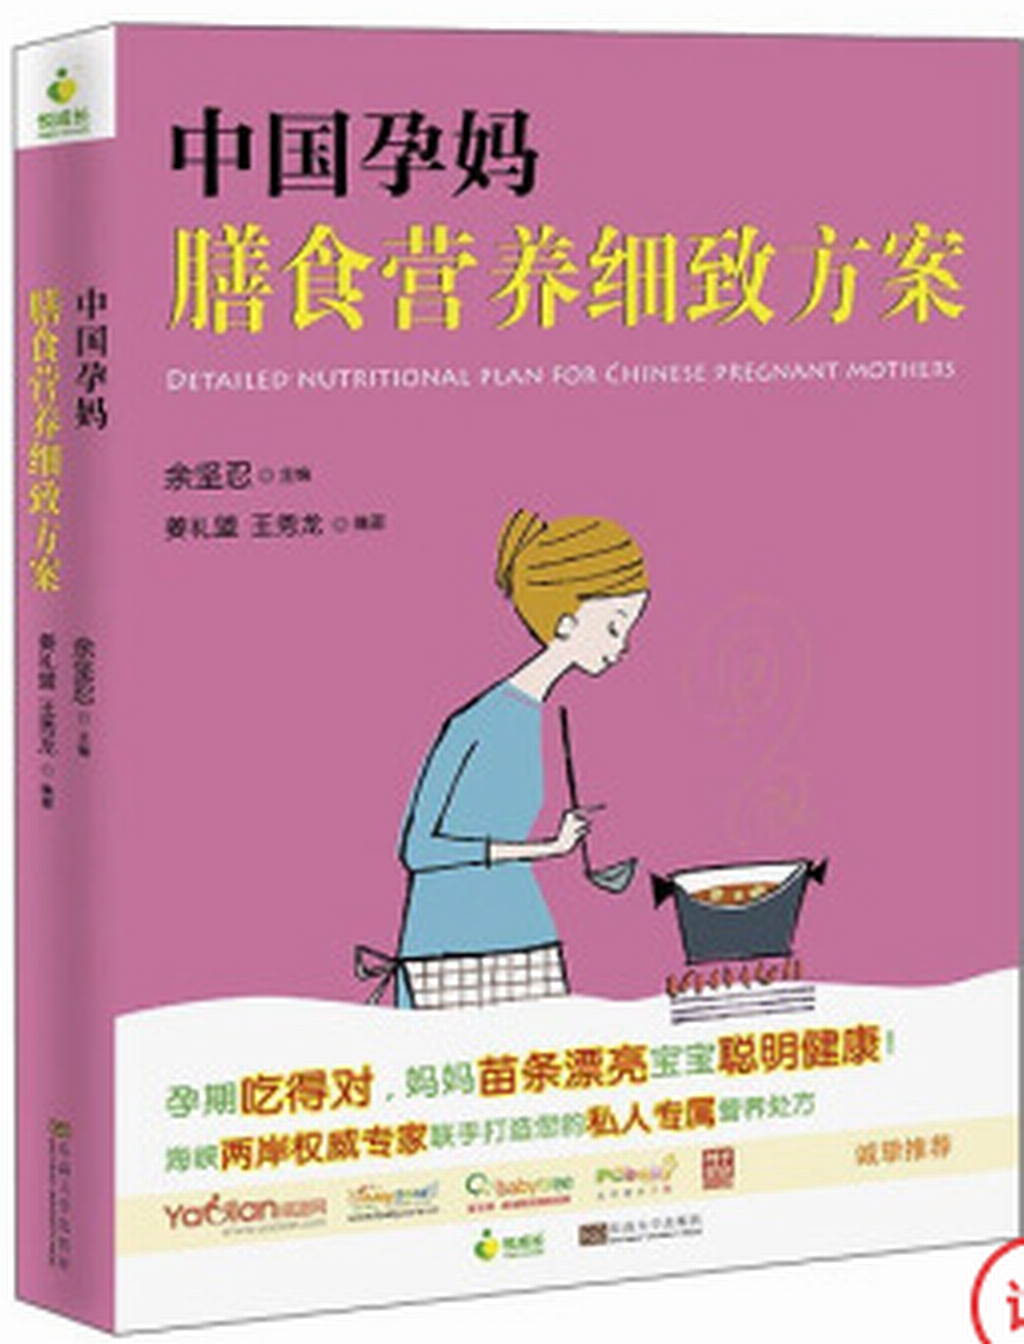 中國孕媽膳食營養細緻方案